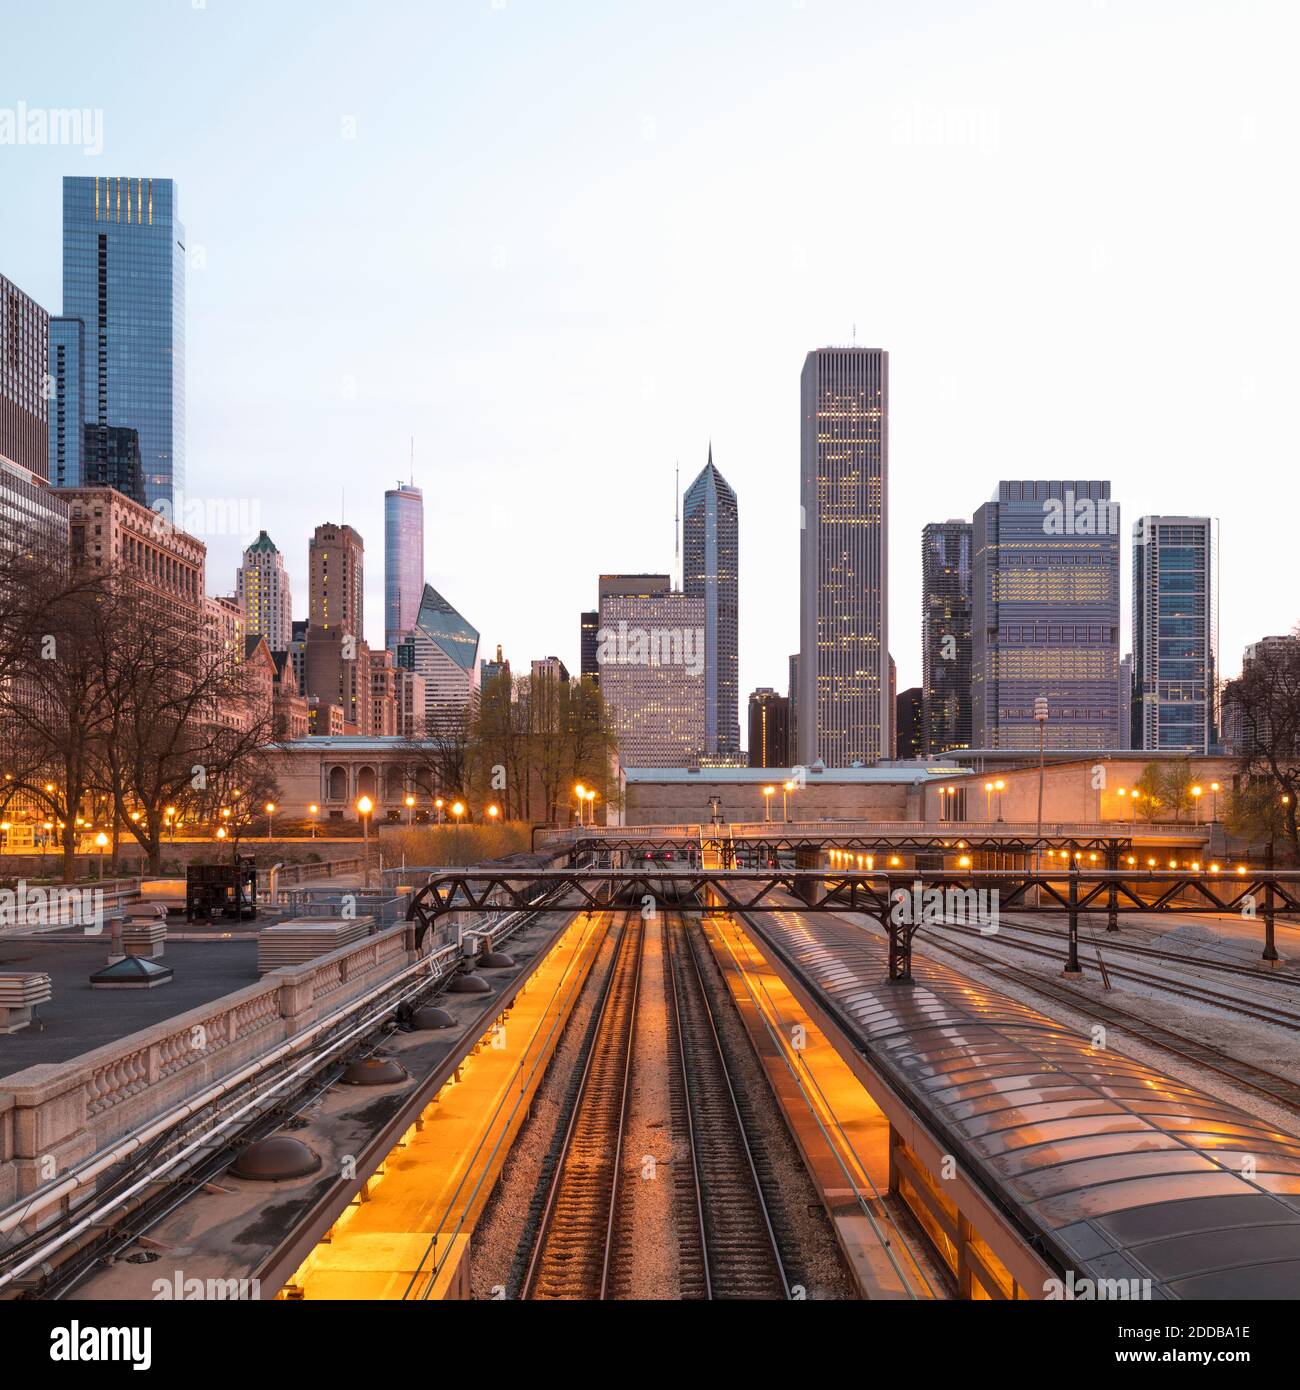 Binari ferroviari illuminati contro gli edifici della città di Chicago, Stati Uniti Foto Stock